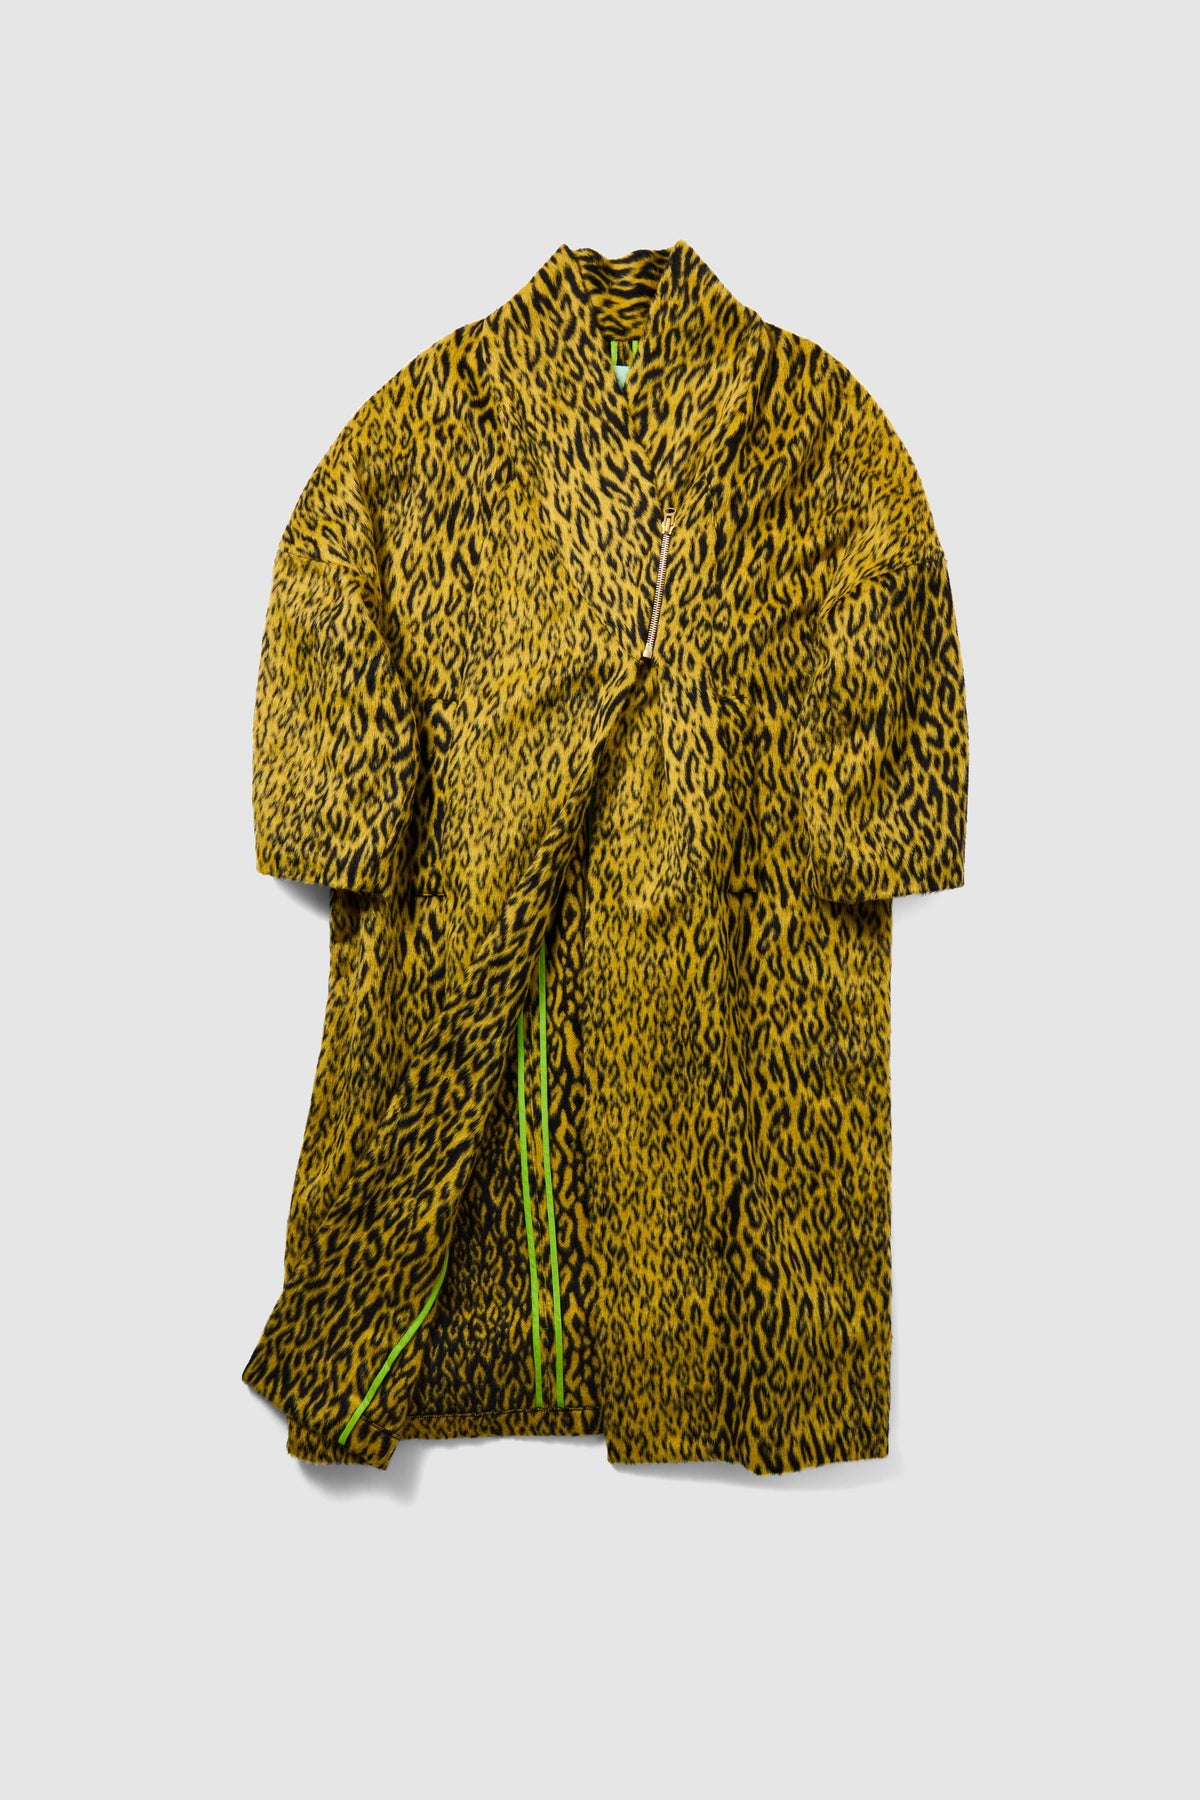 Eren coat in yellow woolen Leopard